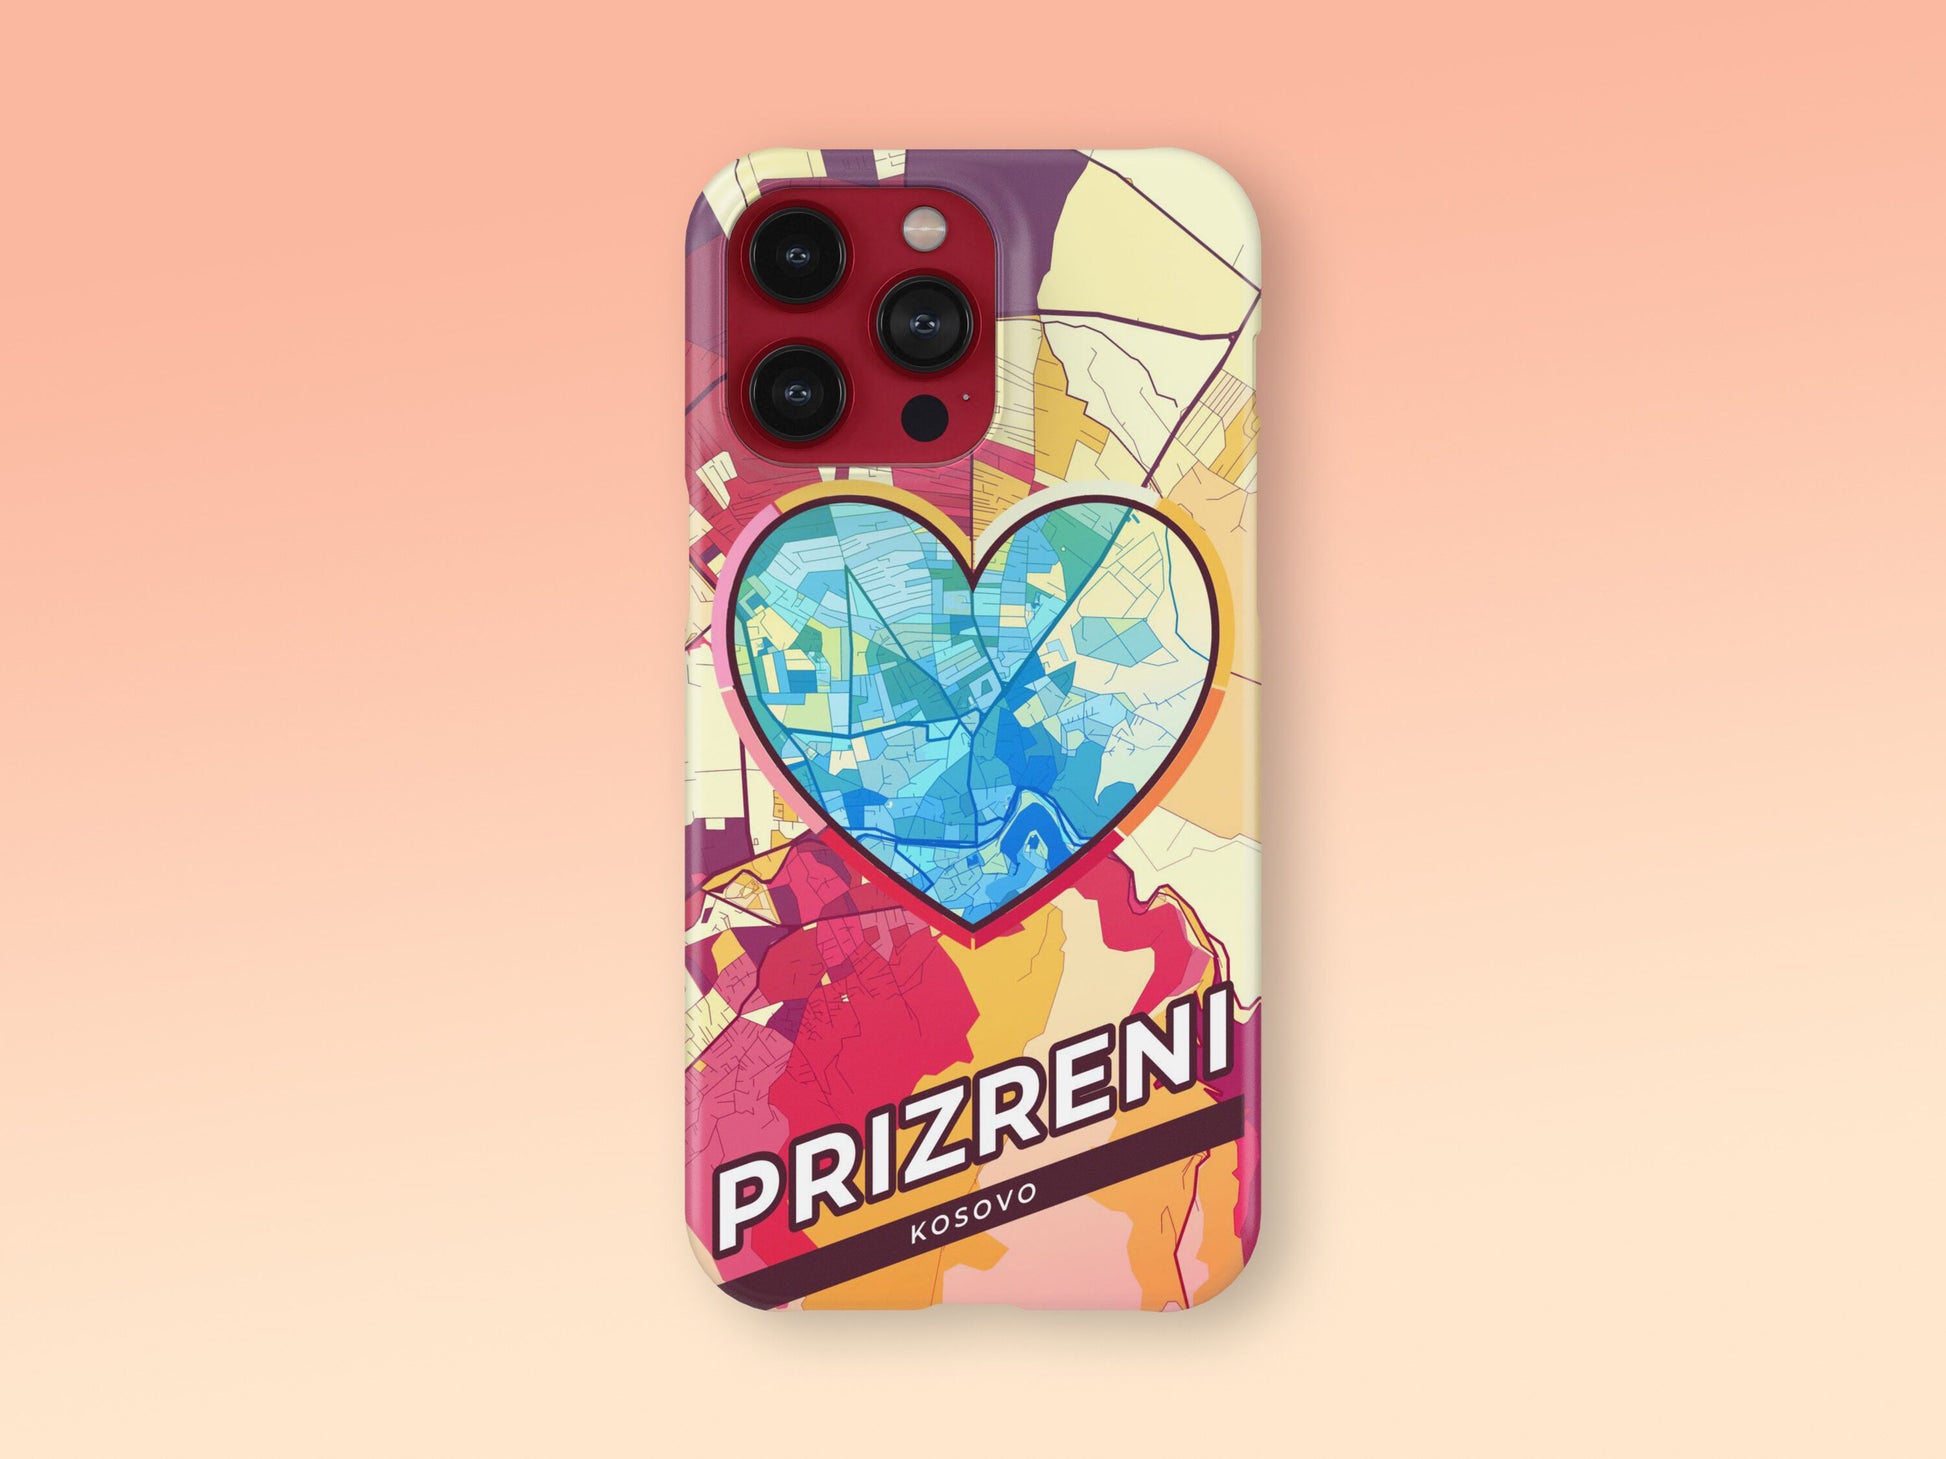 Prizreni / Prizren Kosovo slim phone case with colorful icon. Birthday, wedding or housewarming gift. Couple match cases. 2